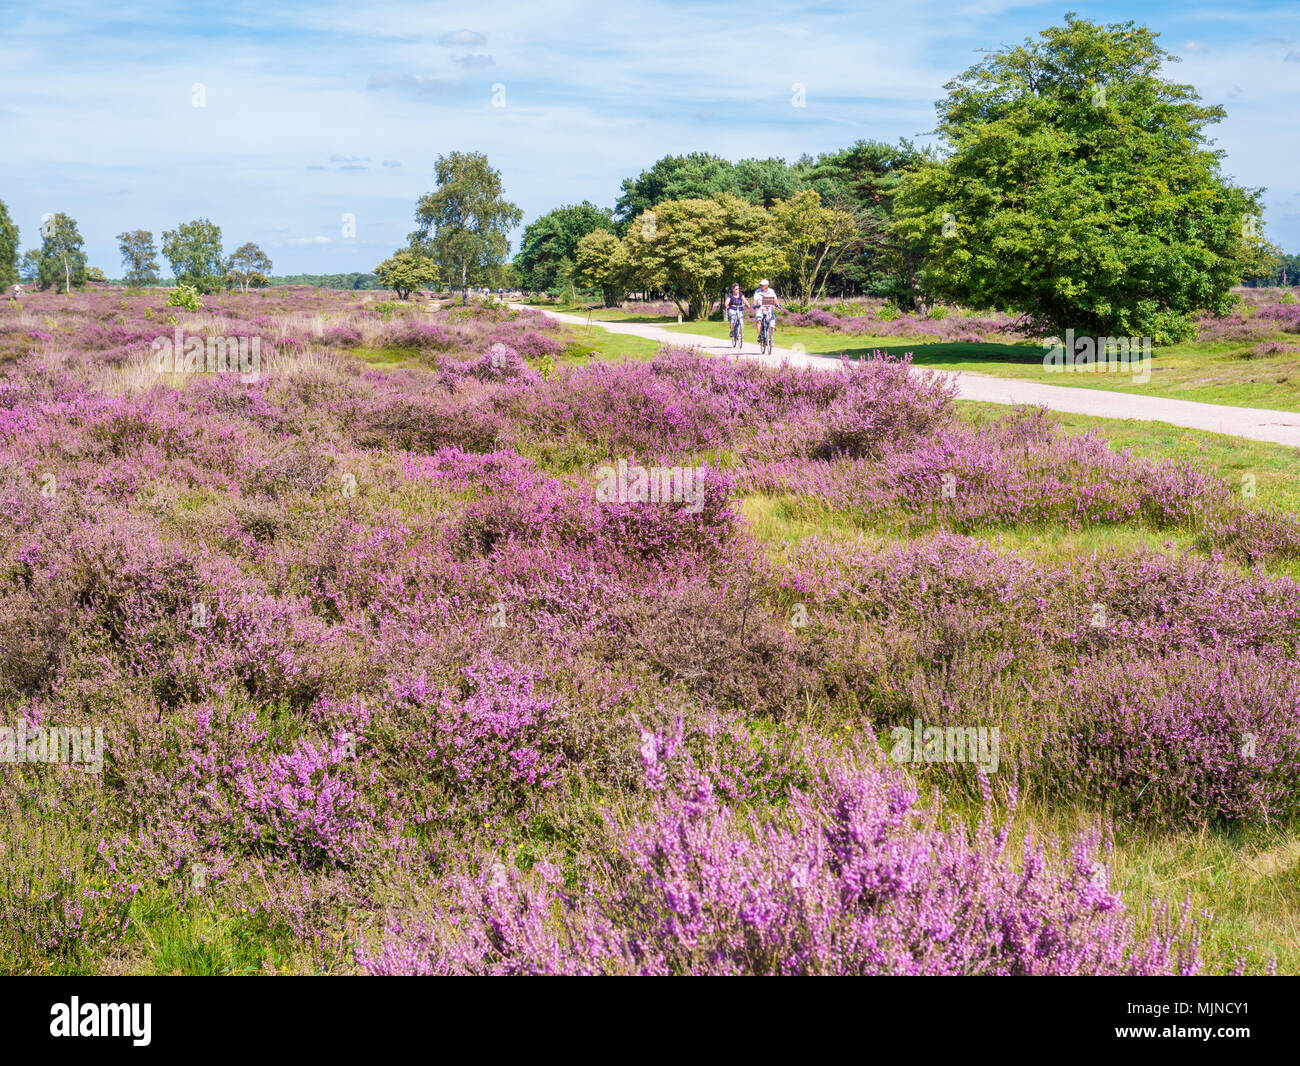 Active people riding bicycle sur chemin via blooming violet heather sur South Heath près de Hilversum, Pays-Bas, Gooi Banque D'Images